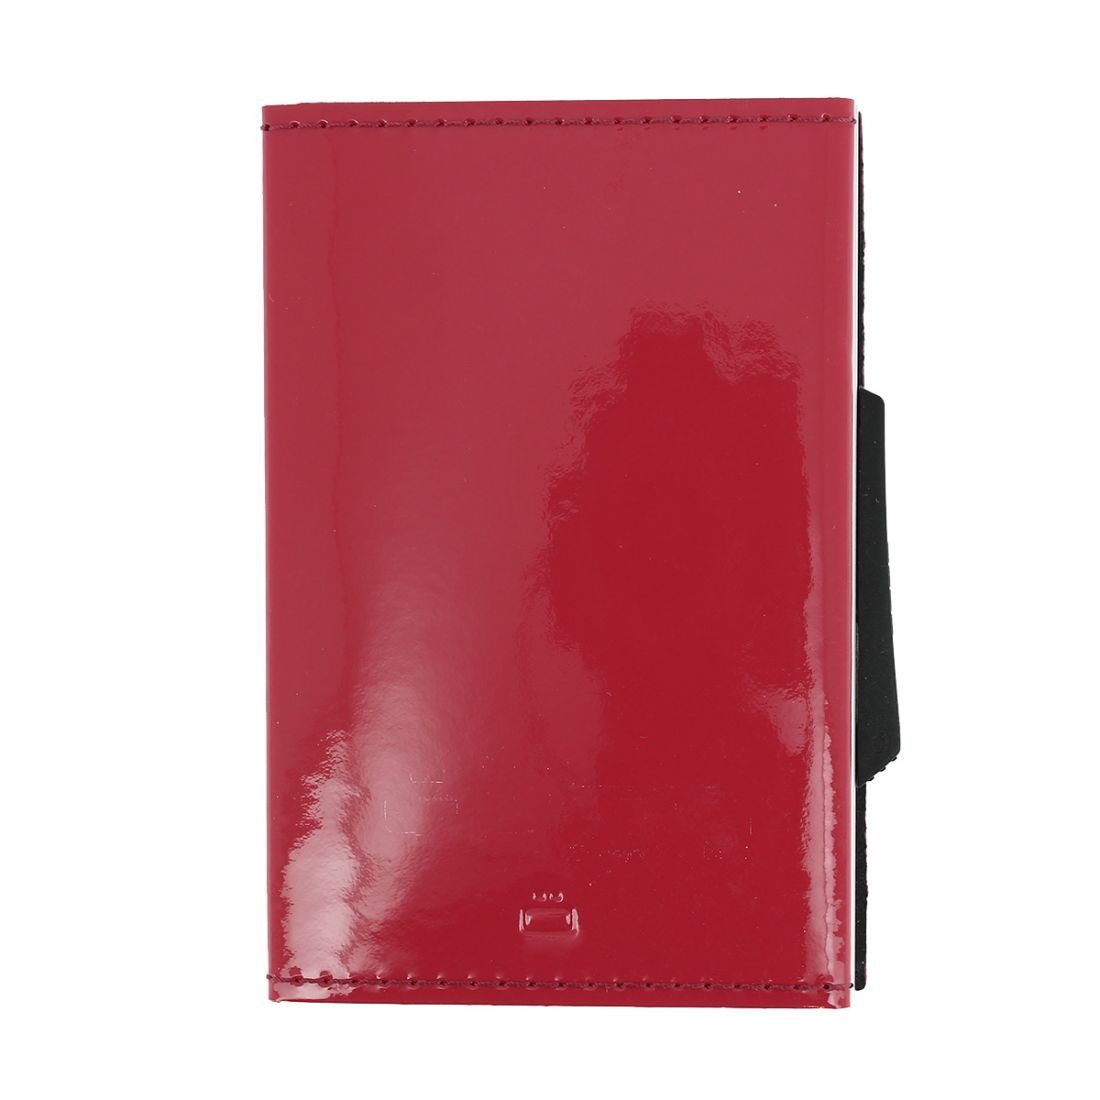 Porte carte Cascade slim Glossy, Aluminium et cuir venis Rose Framboise, Ogon Design. Ogon Designs